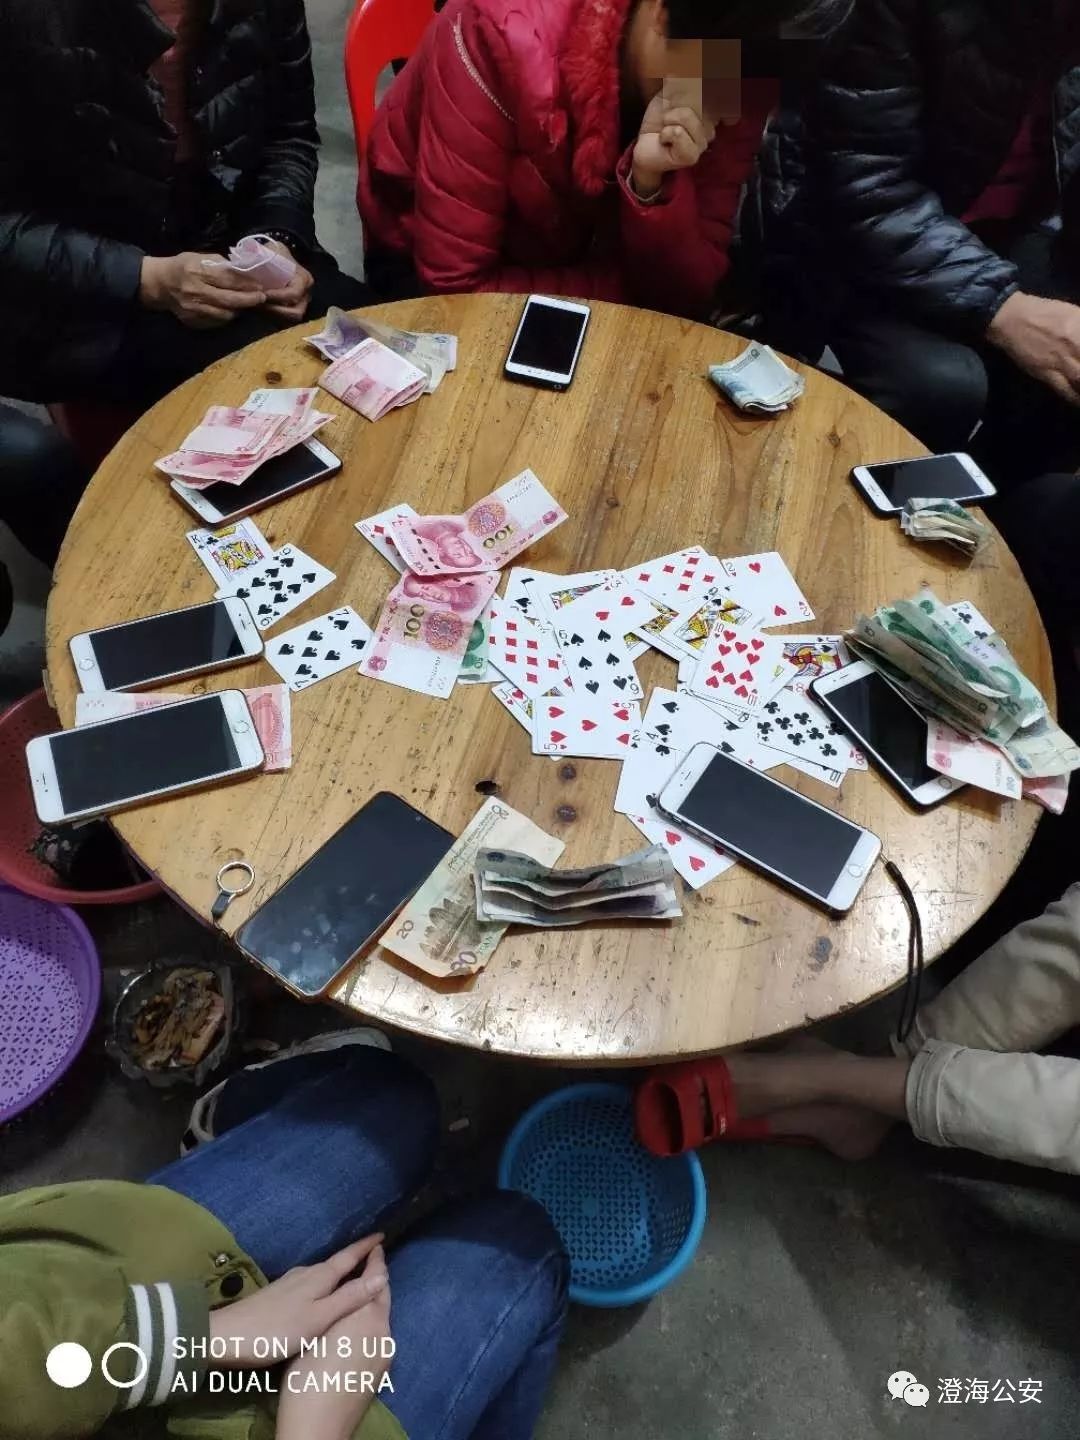 组织警力快速出击,在莲华镇隆华村一住屋内发现有一群人正在赌博,赌桌